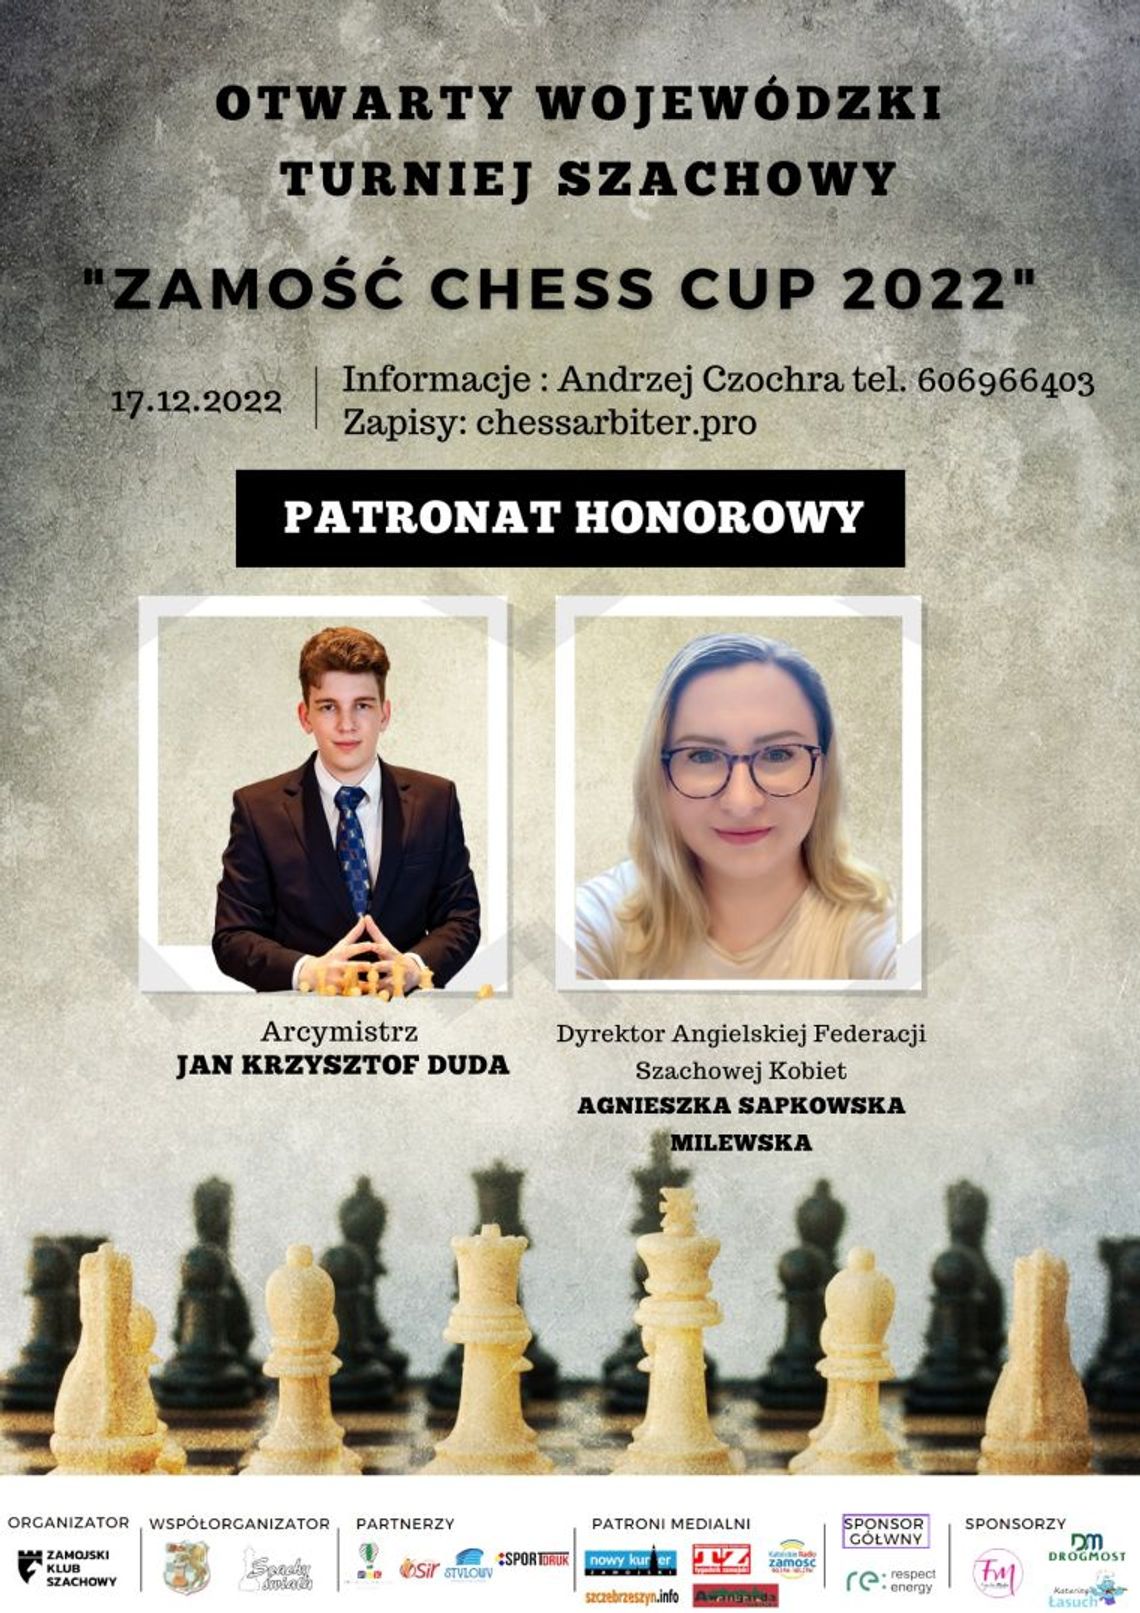 Turniej Szachowy Zamość Chess Cup 2022